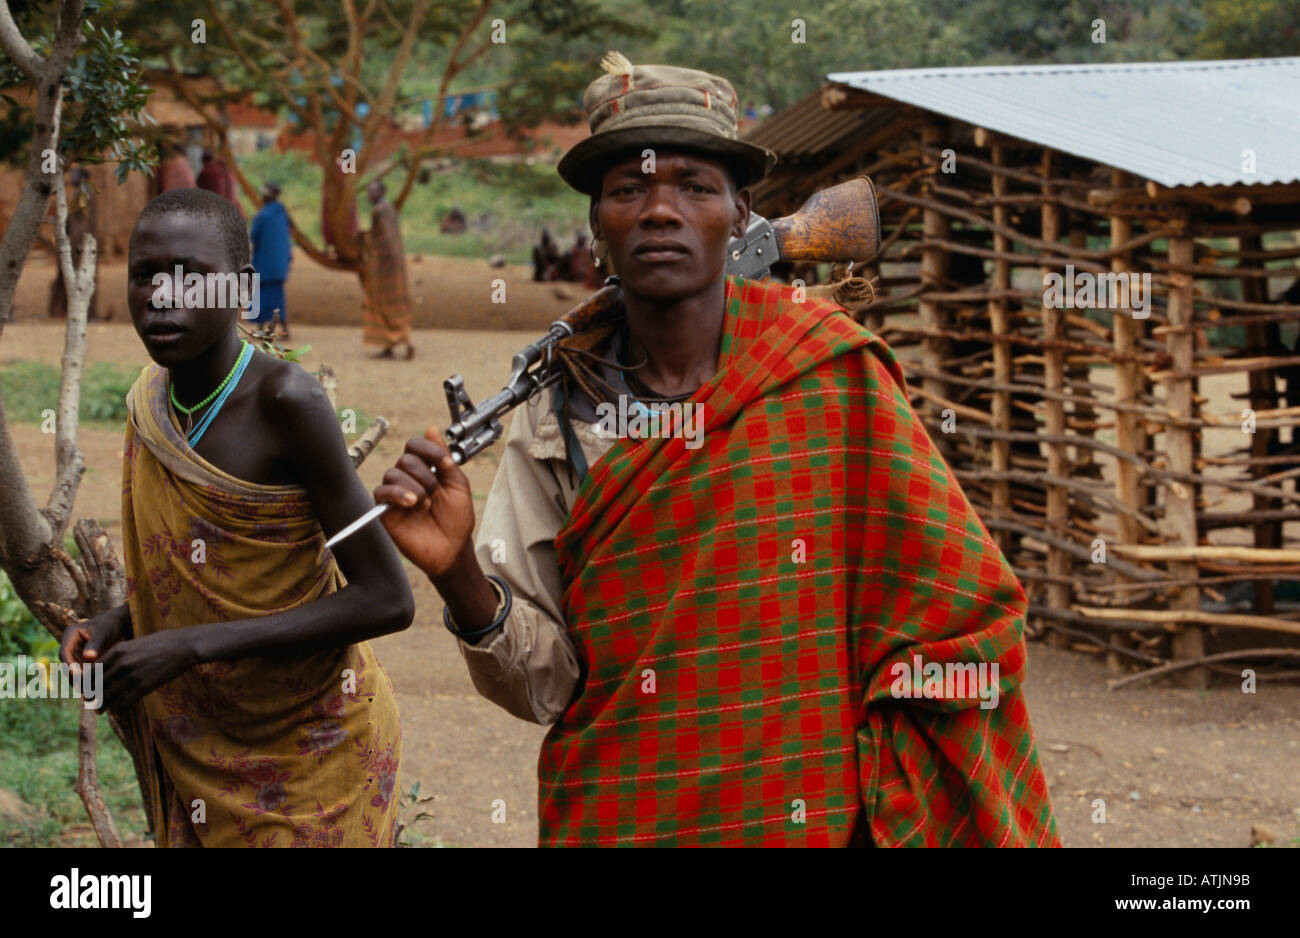 Karamoja cattle herder with rifle in village, Uganda Stock Photo